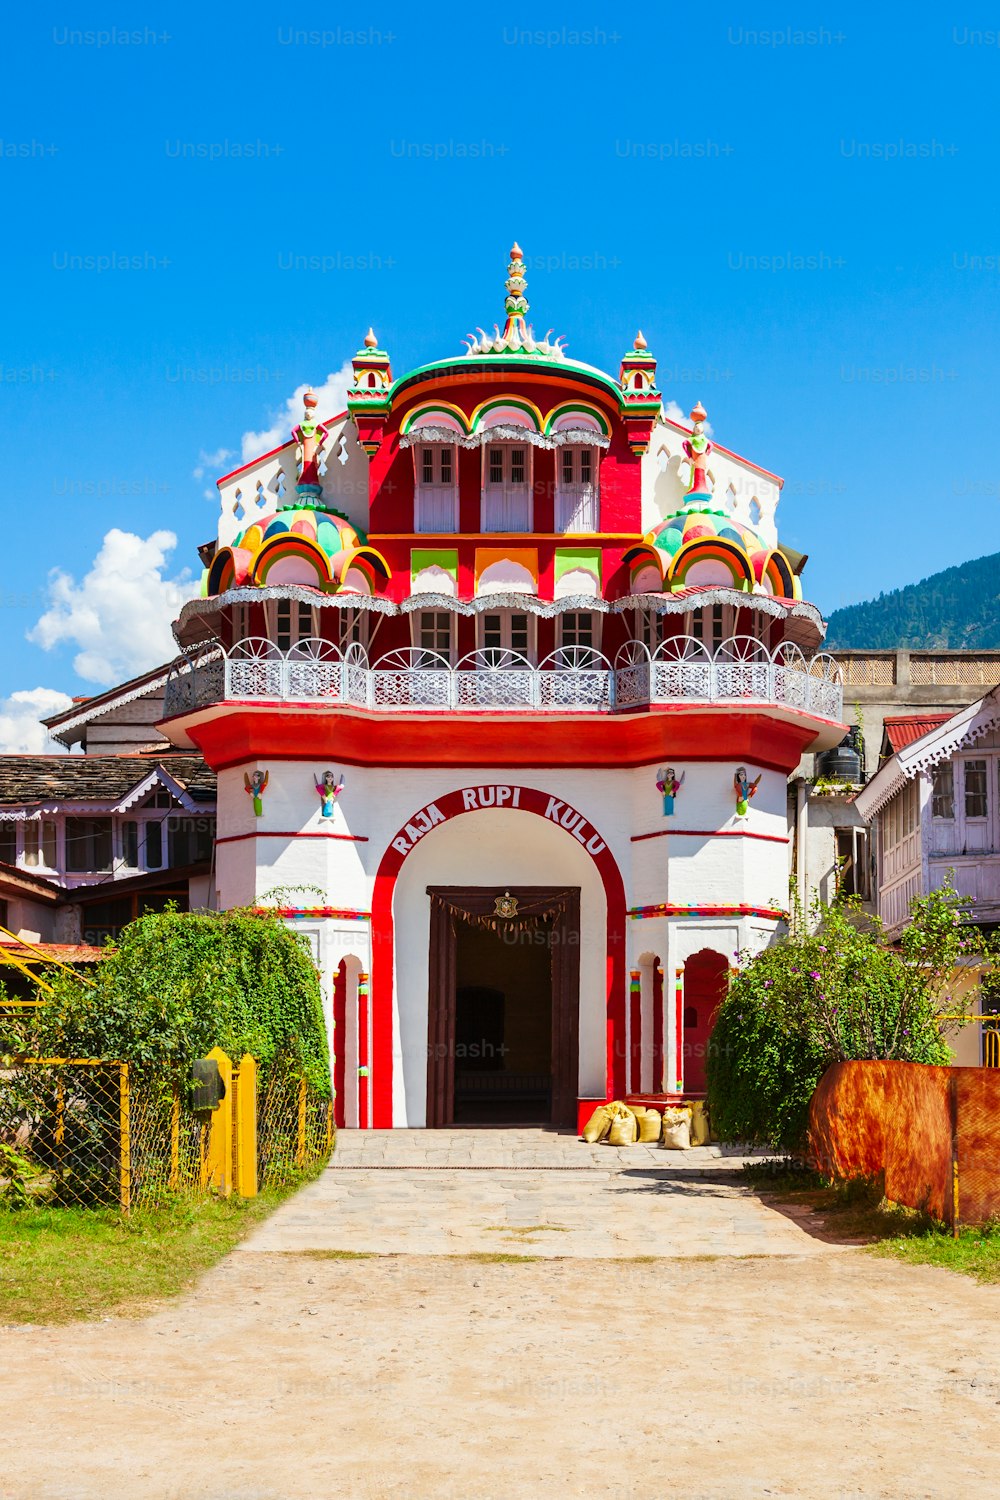 Palacio Raja Rupi en la ciudad de Kullu, estado de Himachal Pradesh en la India